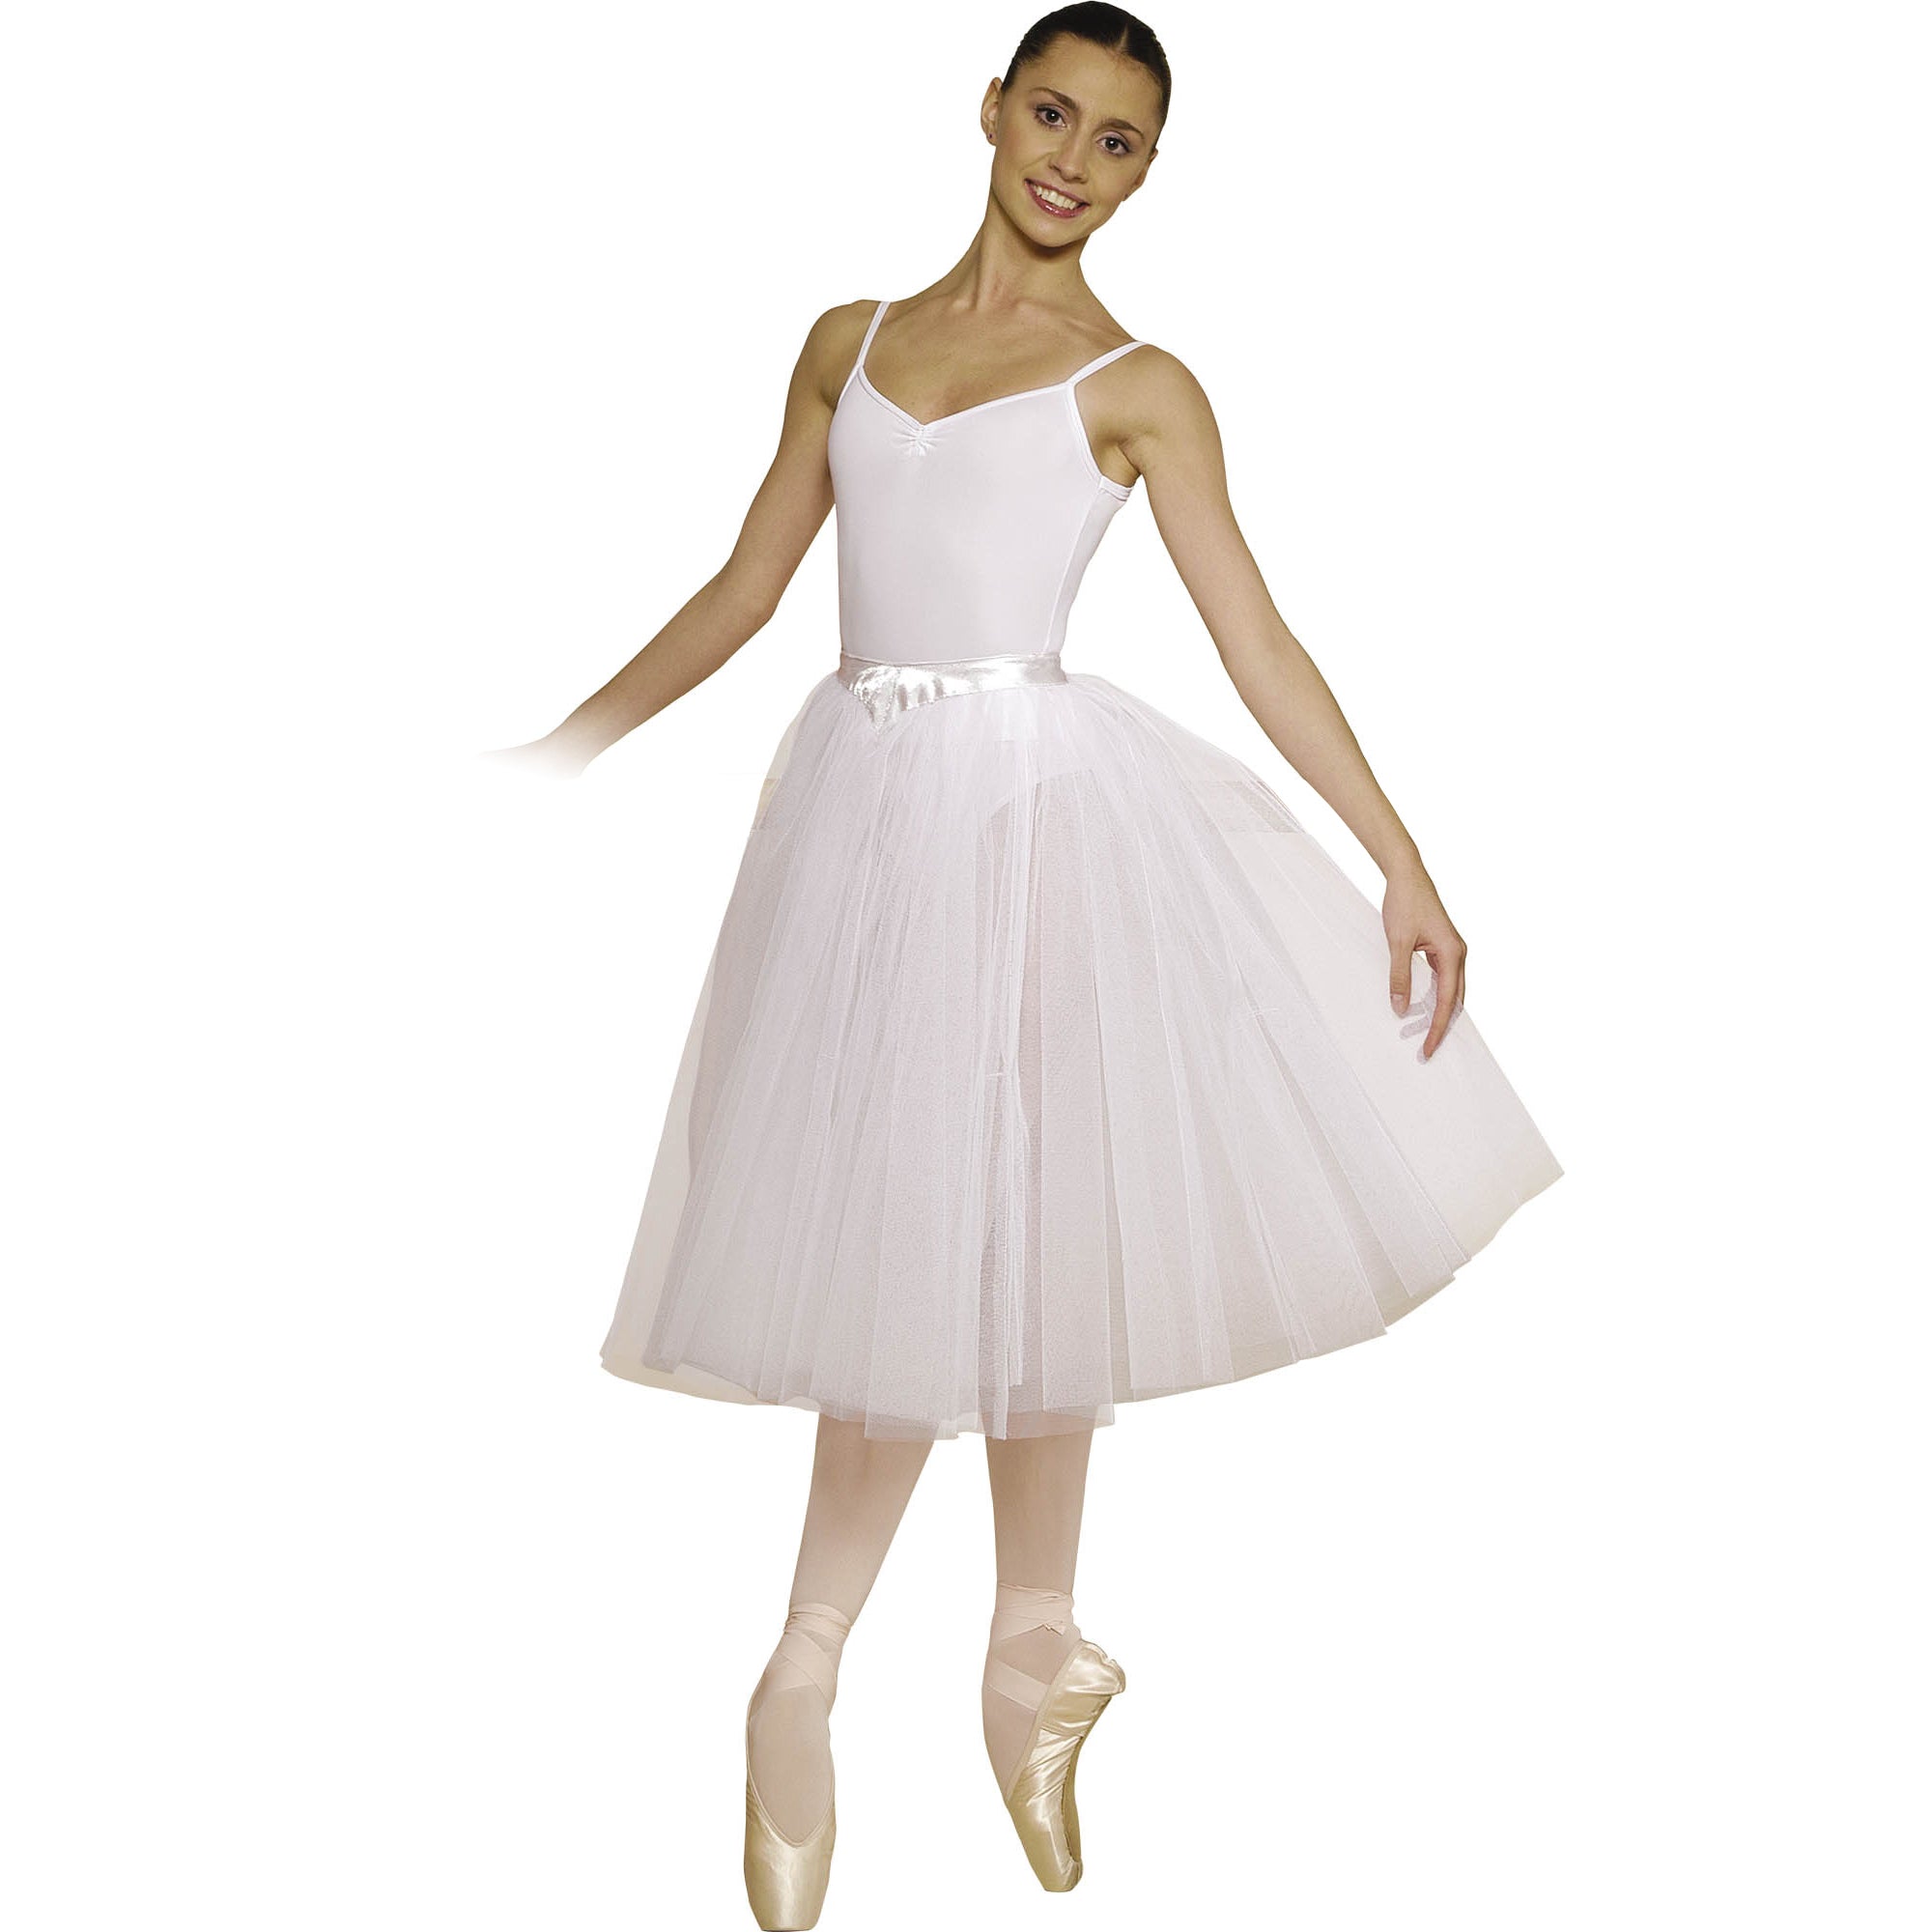 Girls White Ballet Skirt